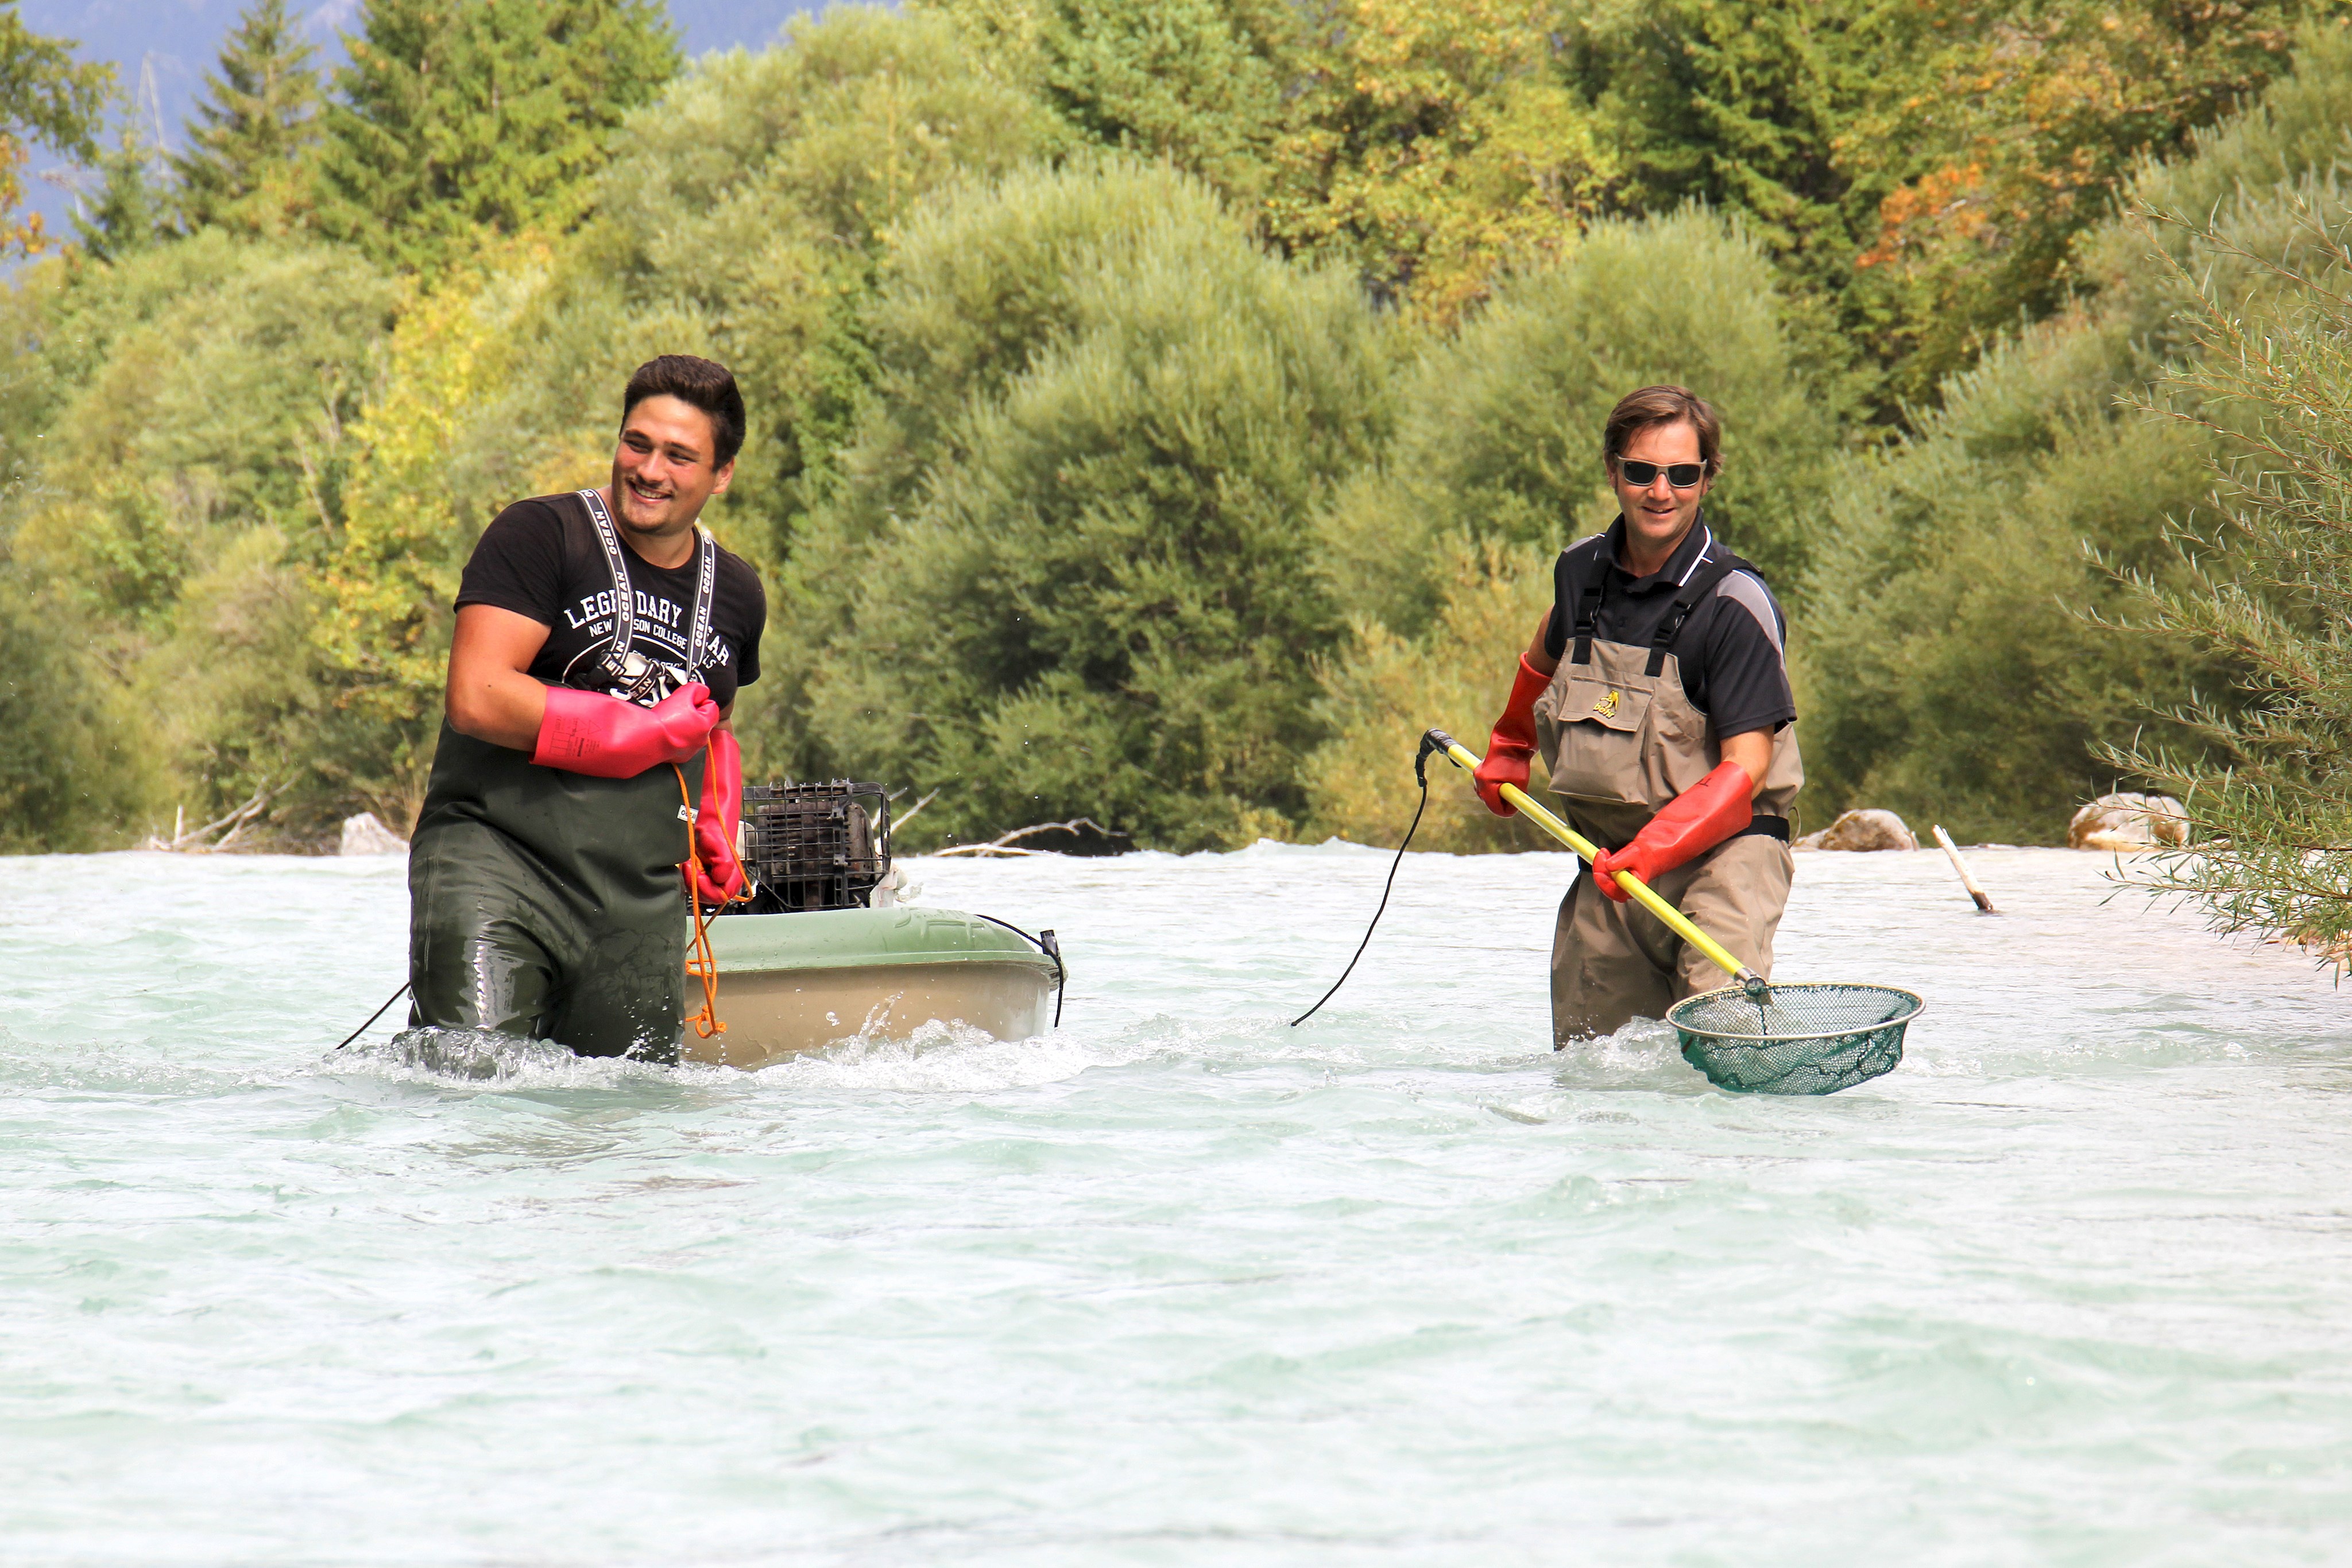 Zwei Männer stehen bis zum Oberschenkel in einem Fluss. Einer zieht ein Boot, der andere hat einen speziellen Kescher in den Händen.